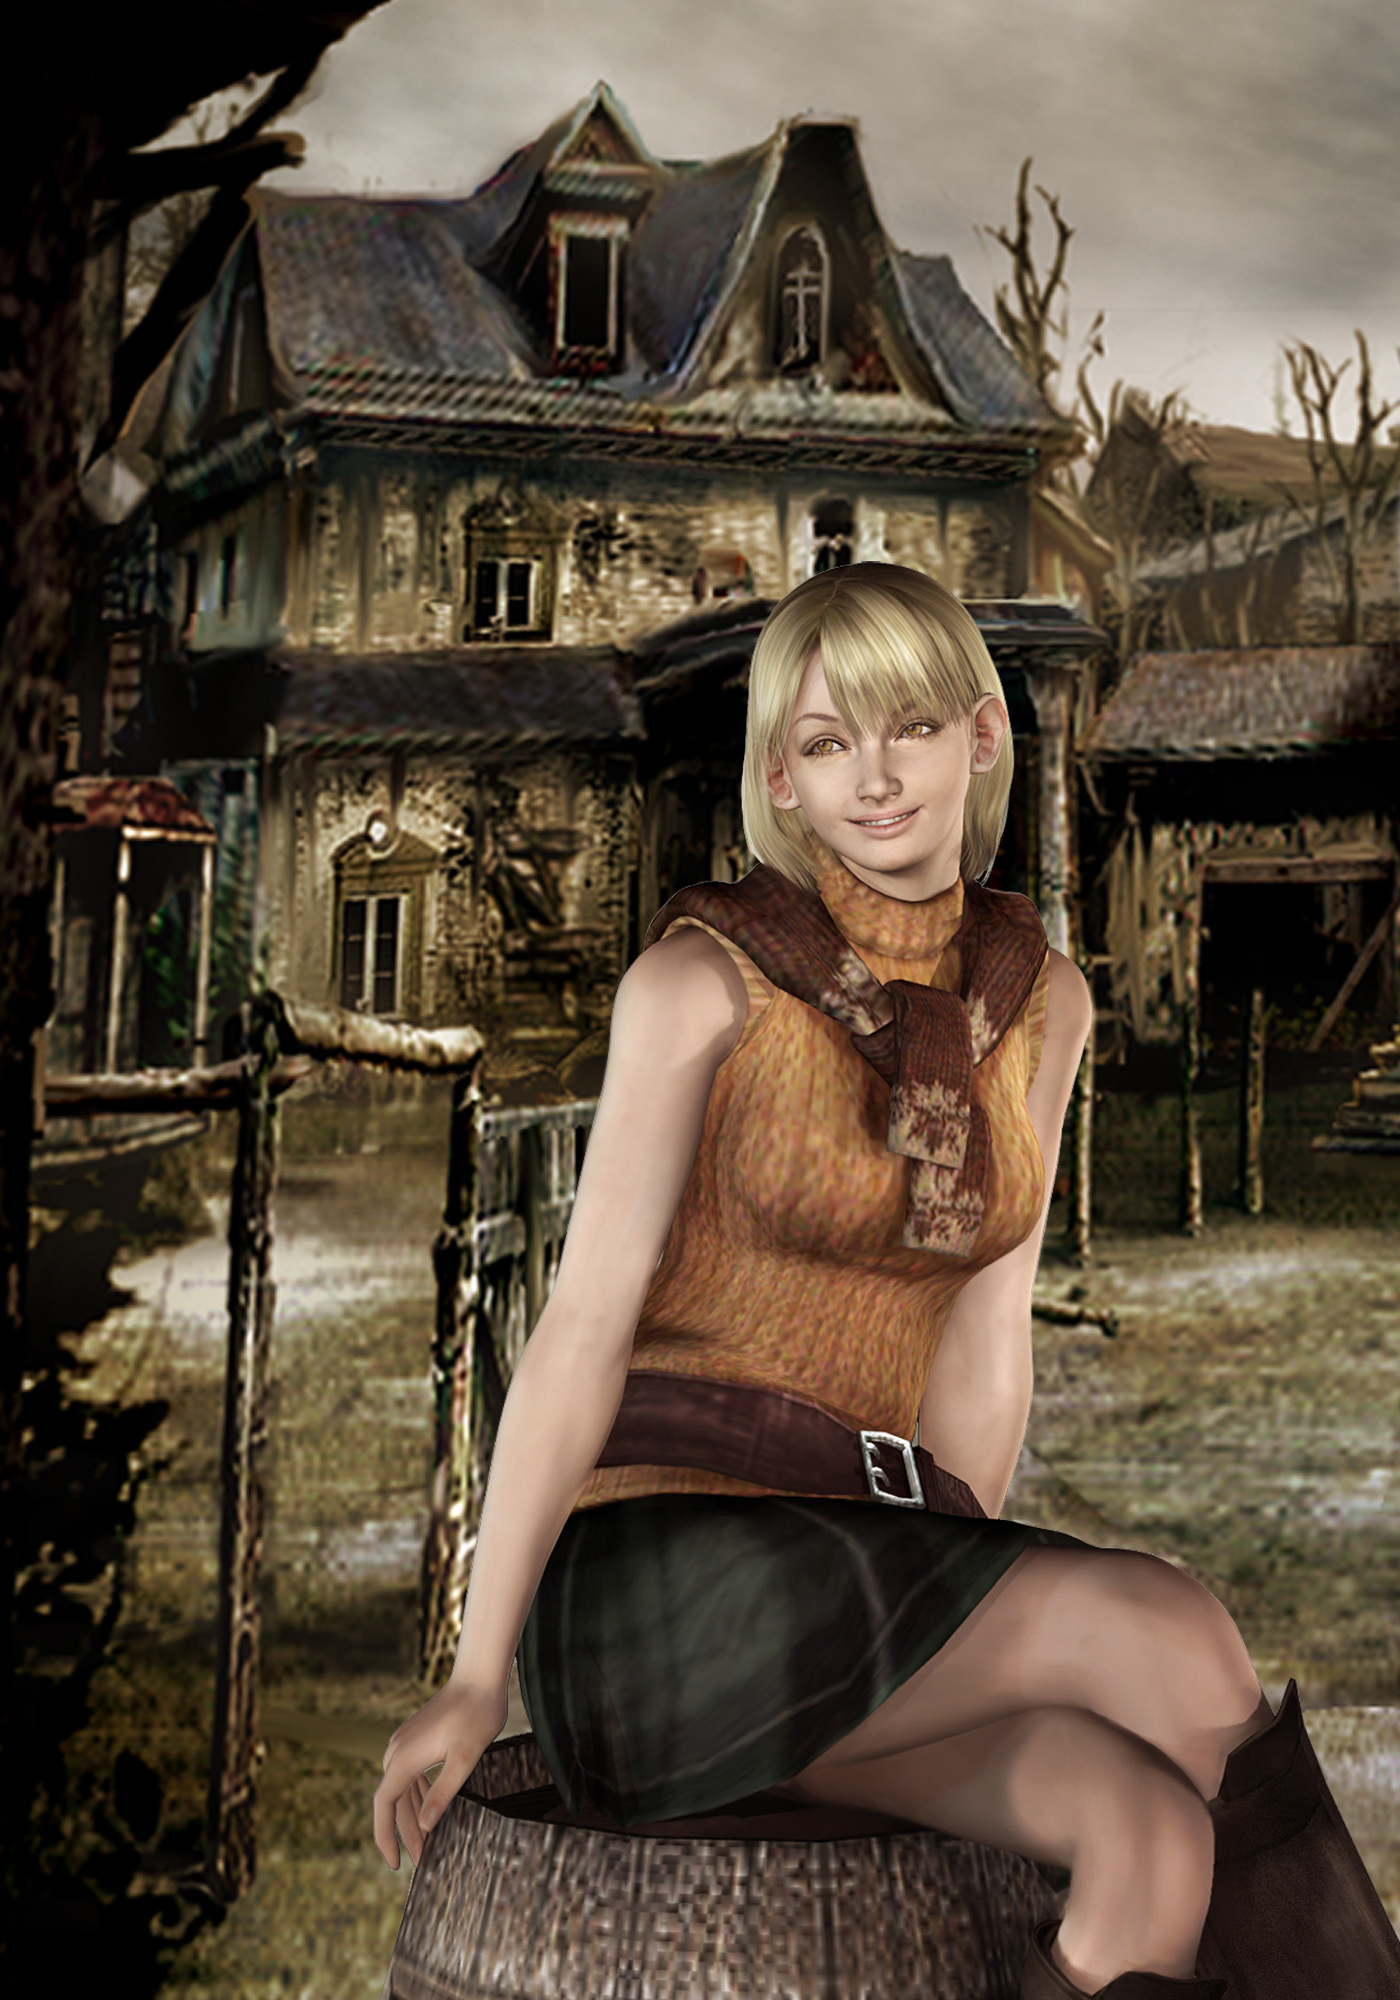 Image Resident Evil 4 Artwork Ashley Graham Presidents Daughter Resident Evil Wiki 7951